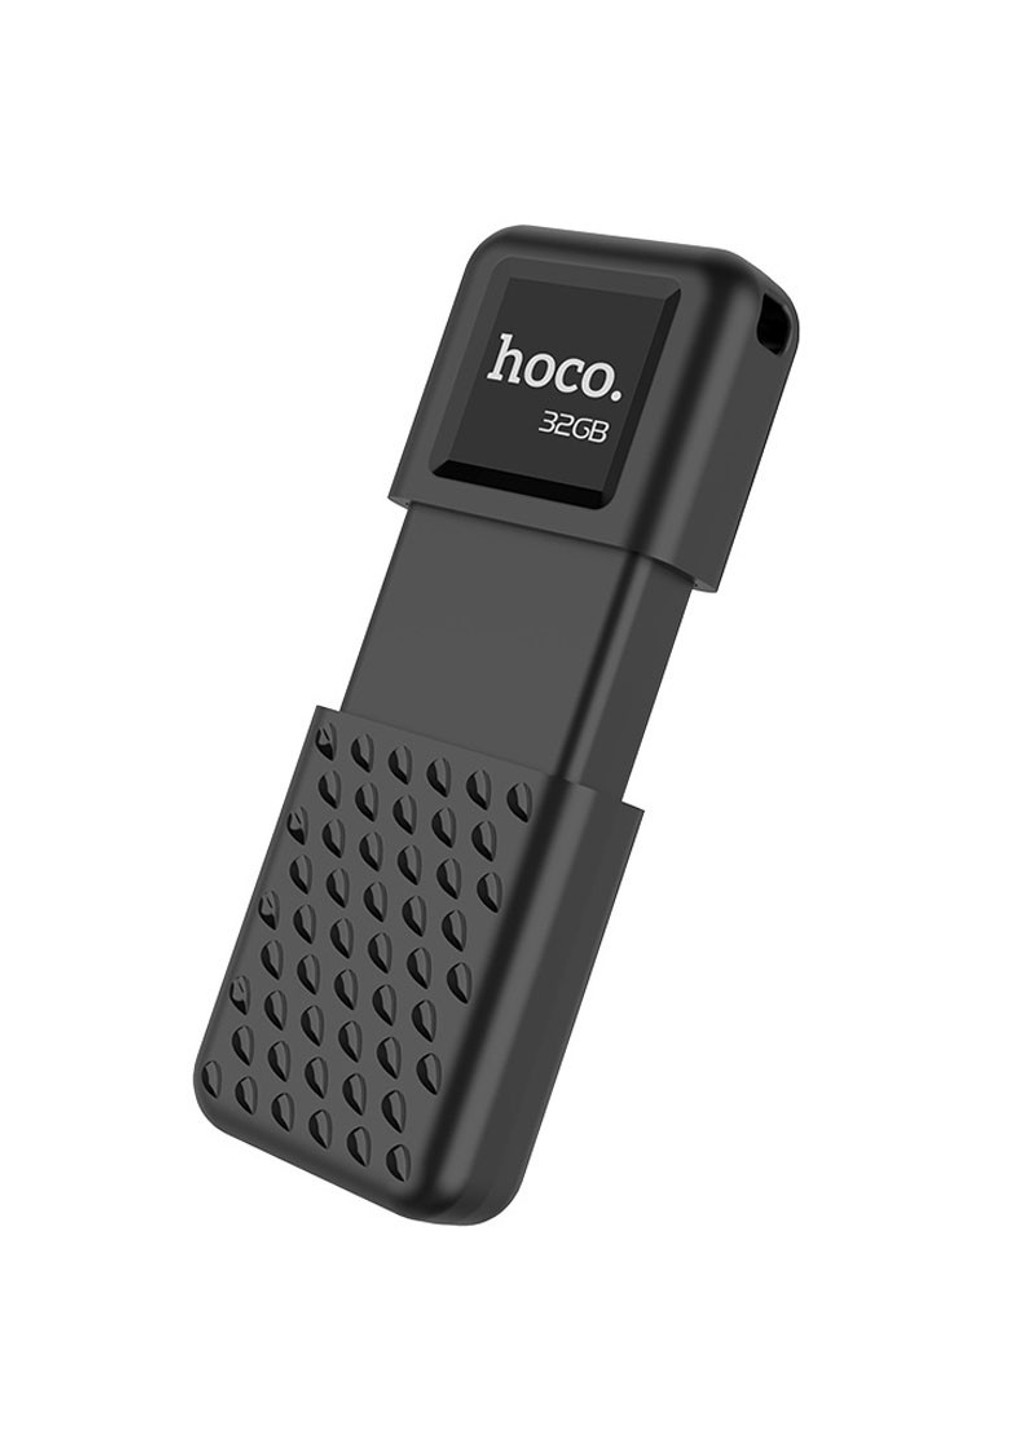 Флеш накопичувач USB 2.0 UD6 32GB Hoco (261335265)